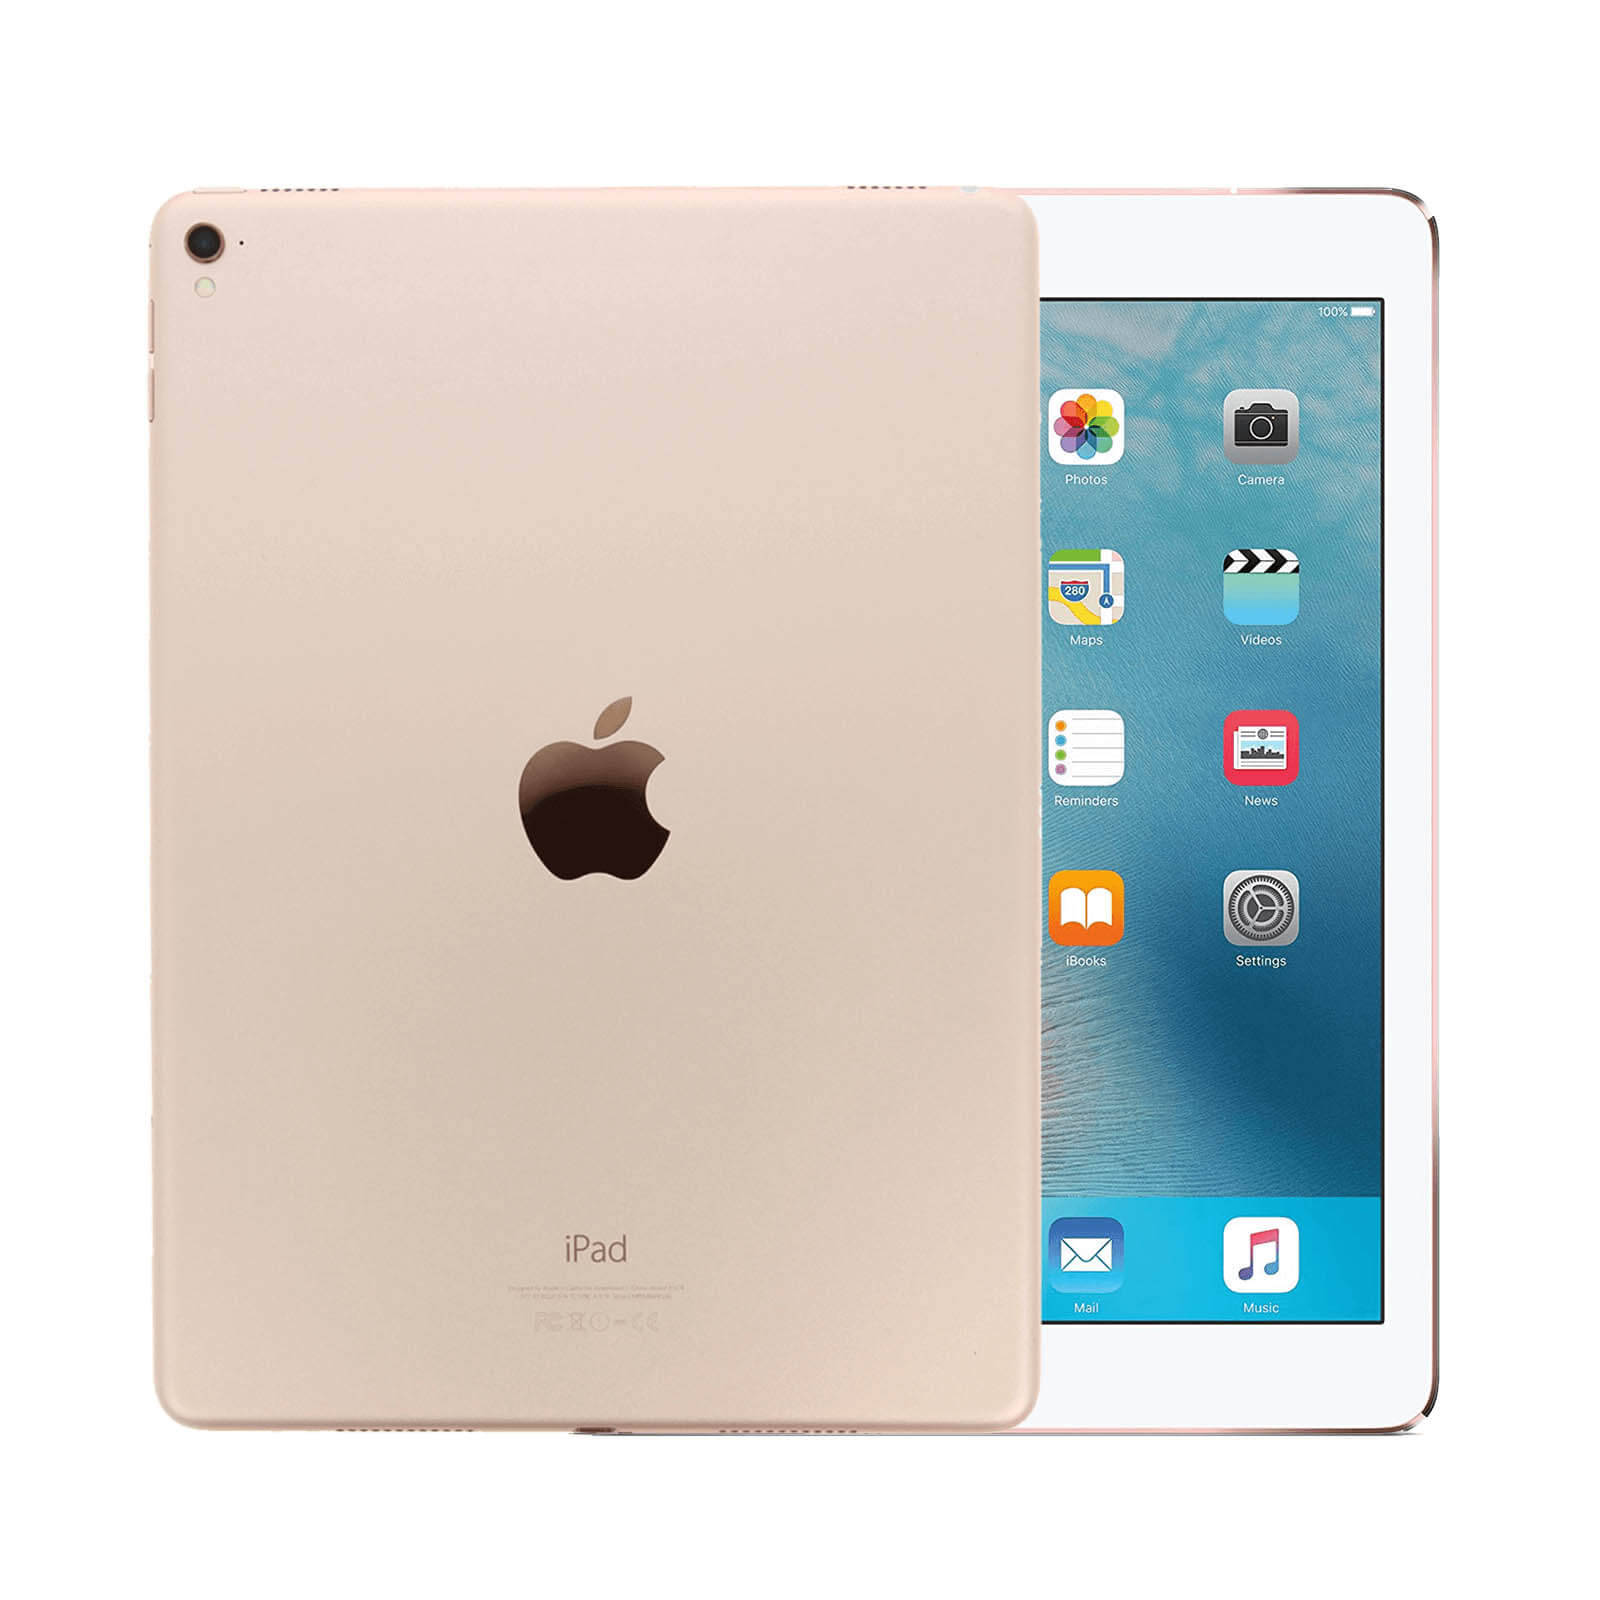 iPad Pro 9.7 Inch 256GB Gold Good - WiFi